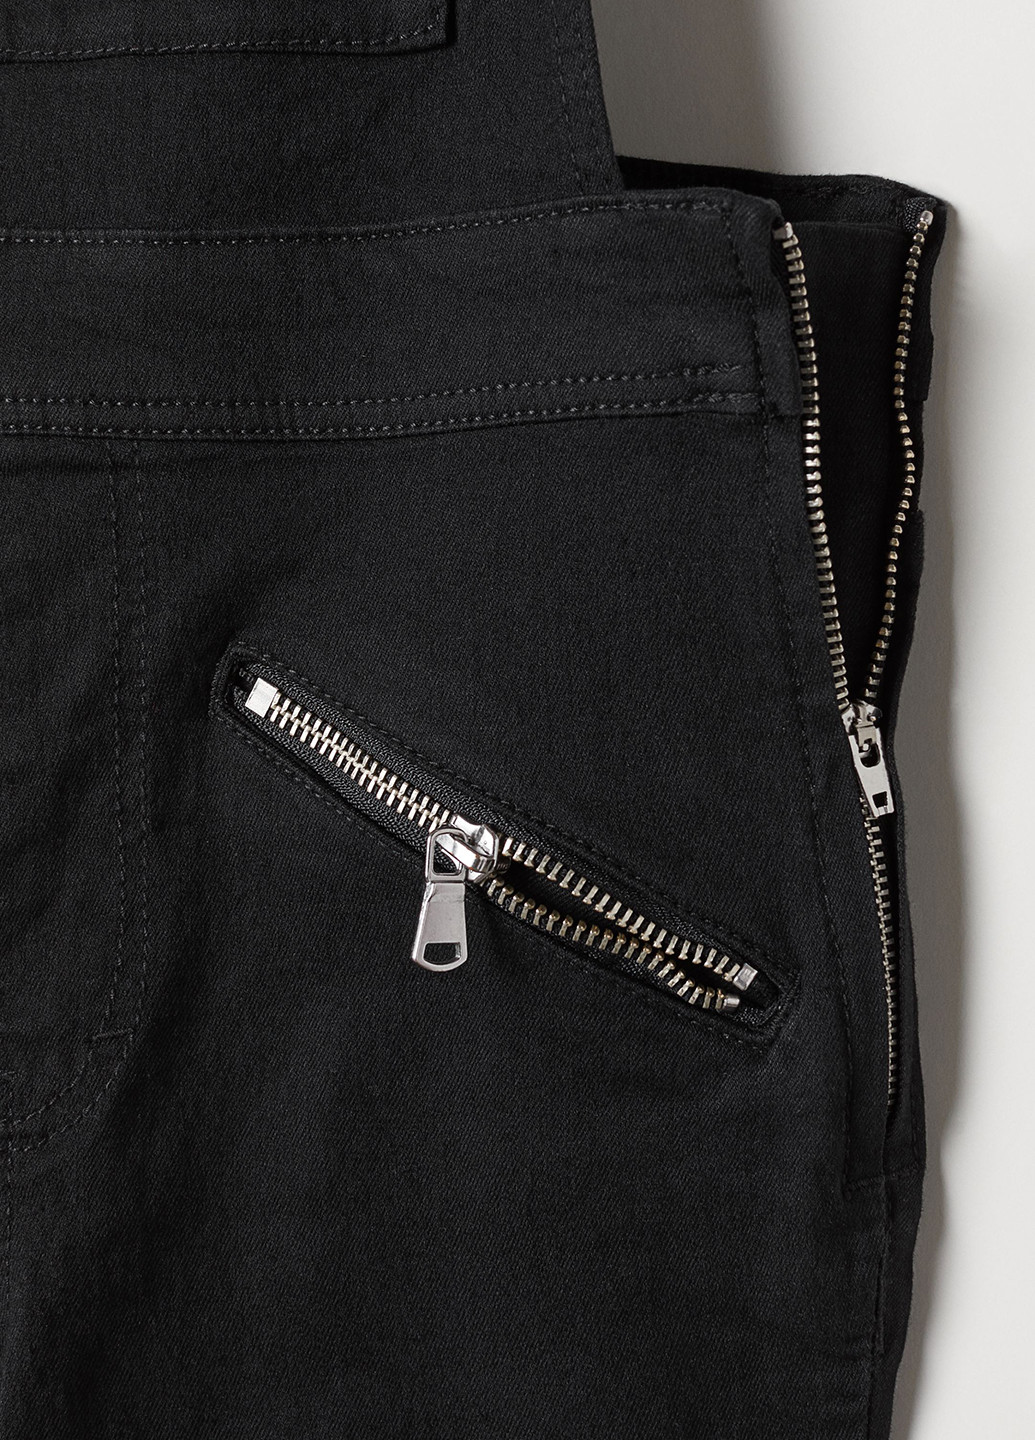 Комбинезон H&M комбинезон-брюки однотонный чёрный кэжуал хлопок